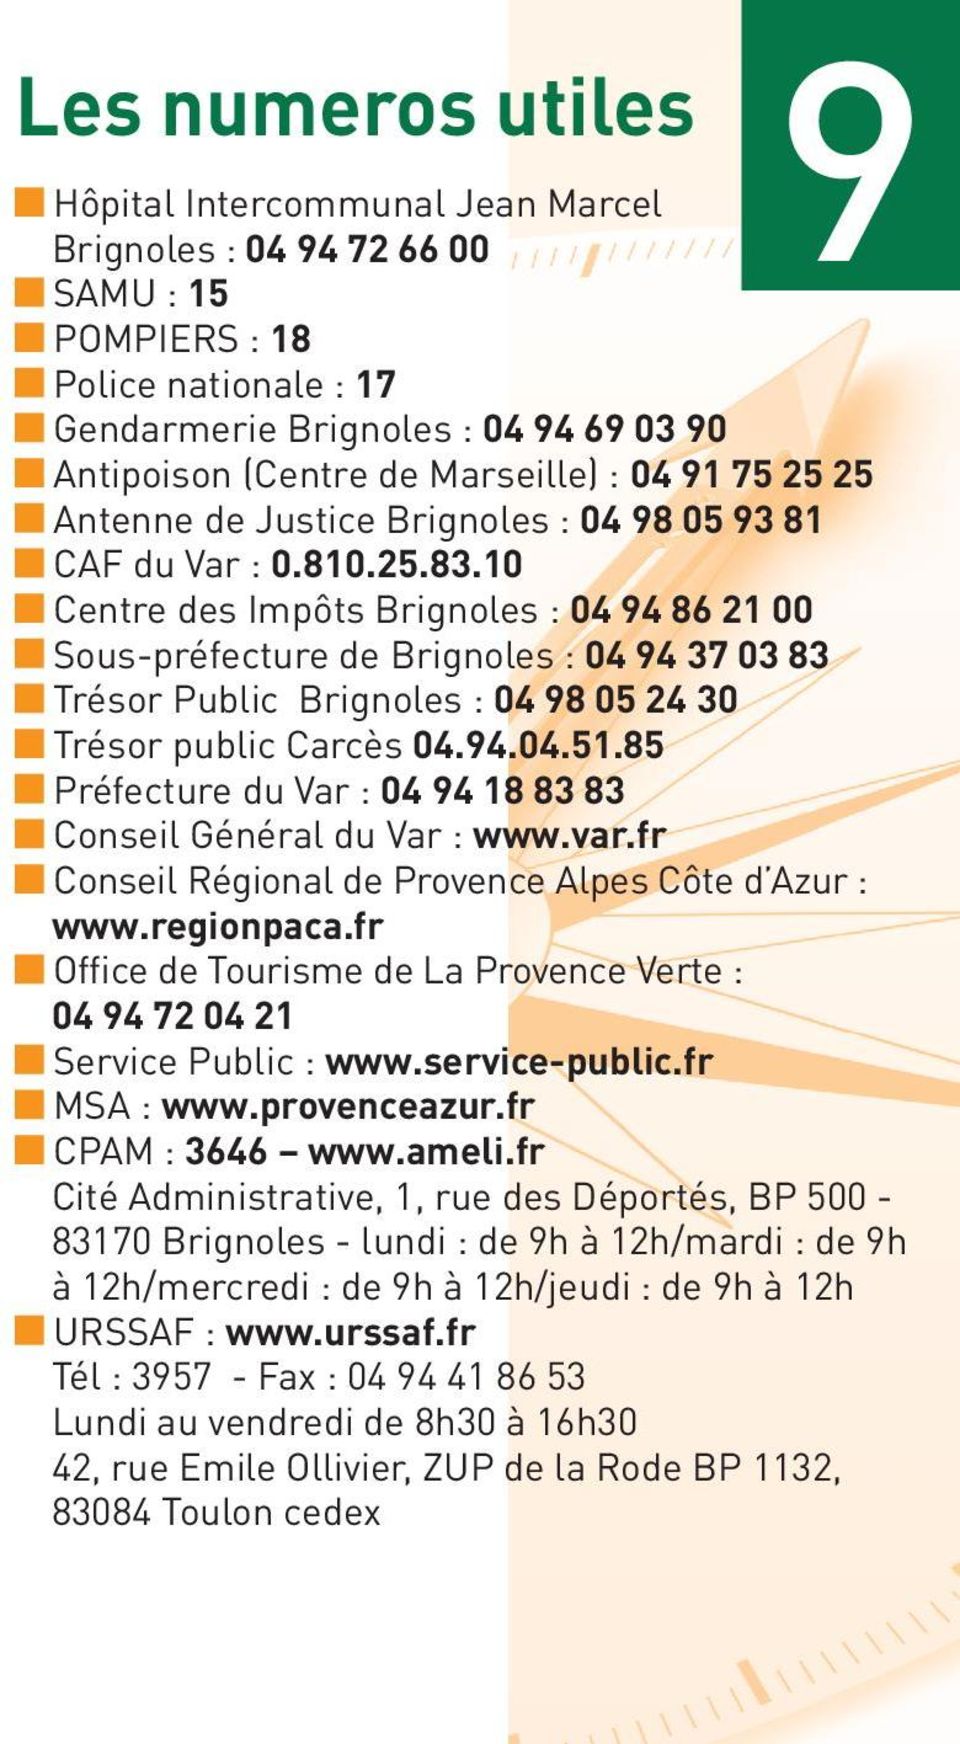 10 Centre des Impôts Brignoles : 04 94 86 21 00 Sous-préfecture de Brignoles : 04 94 37 03 83 Trésor Public Brignoles : 04 98 05 24 30 Trésor public Carcès 04.94.04.51.